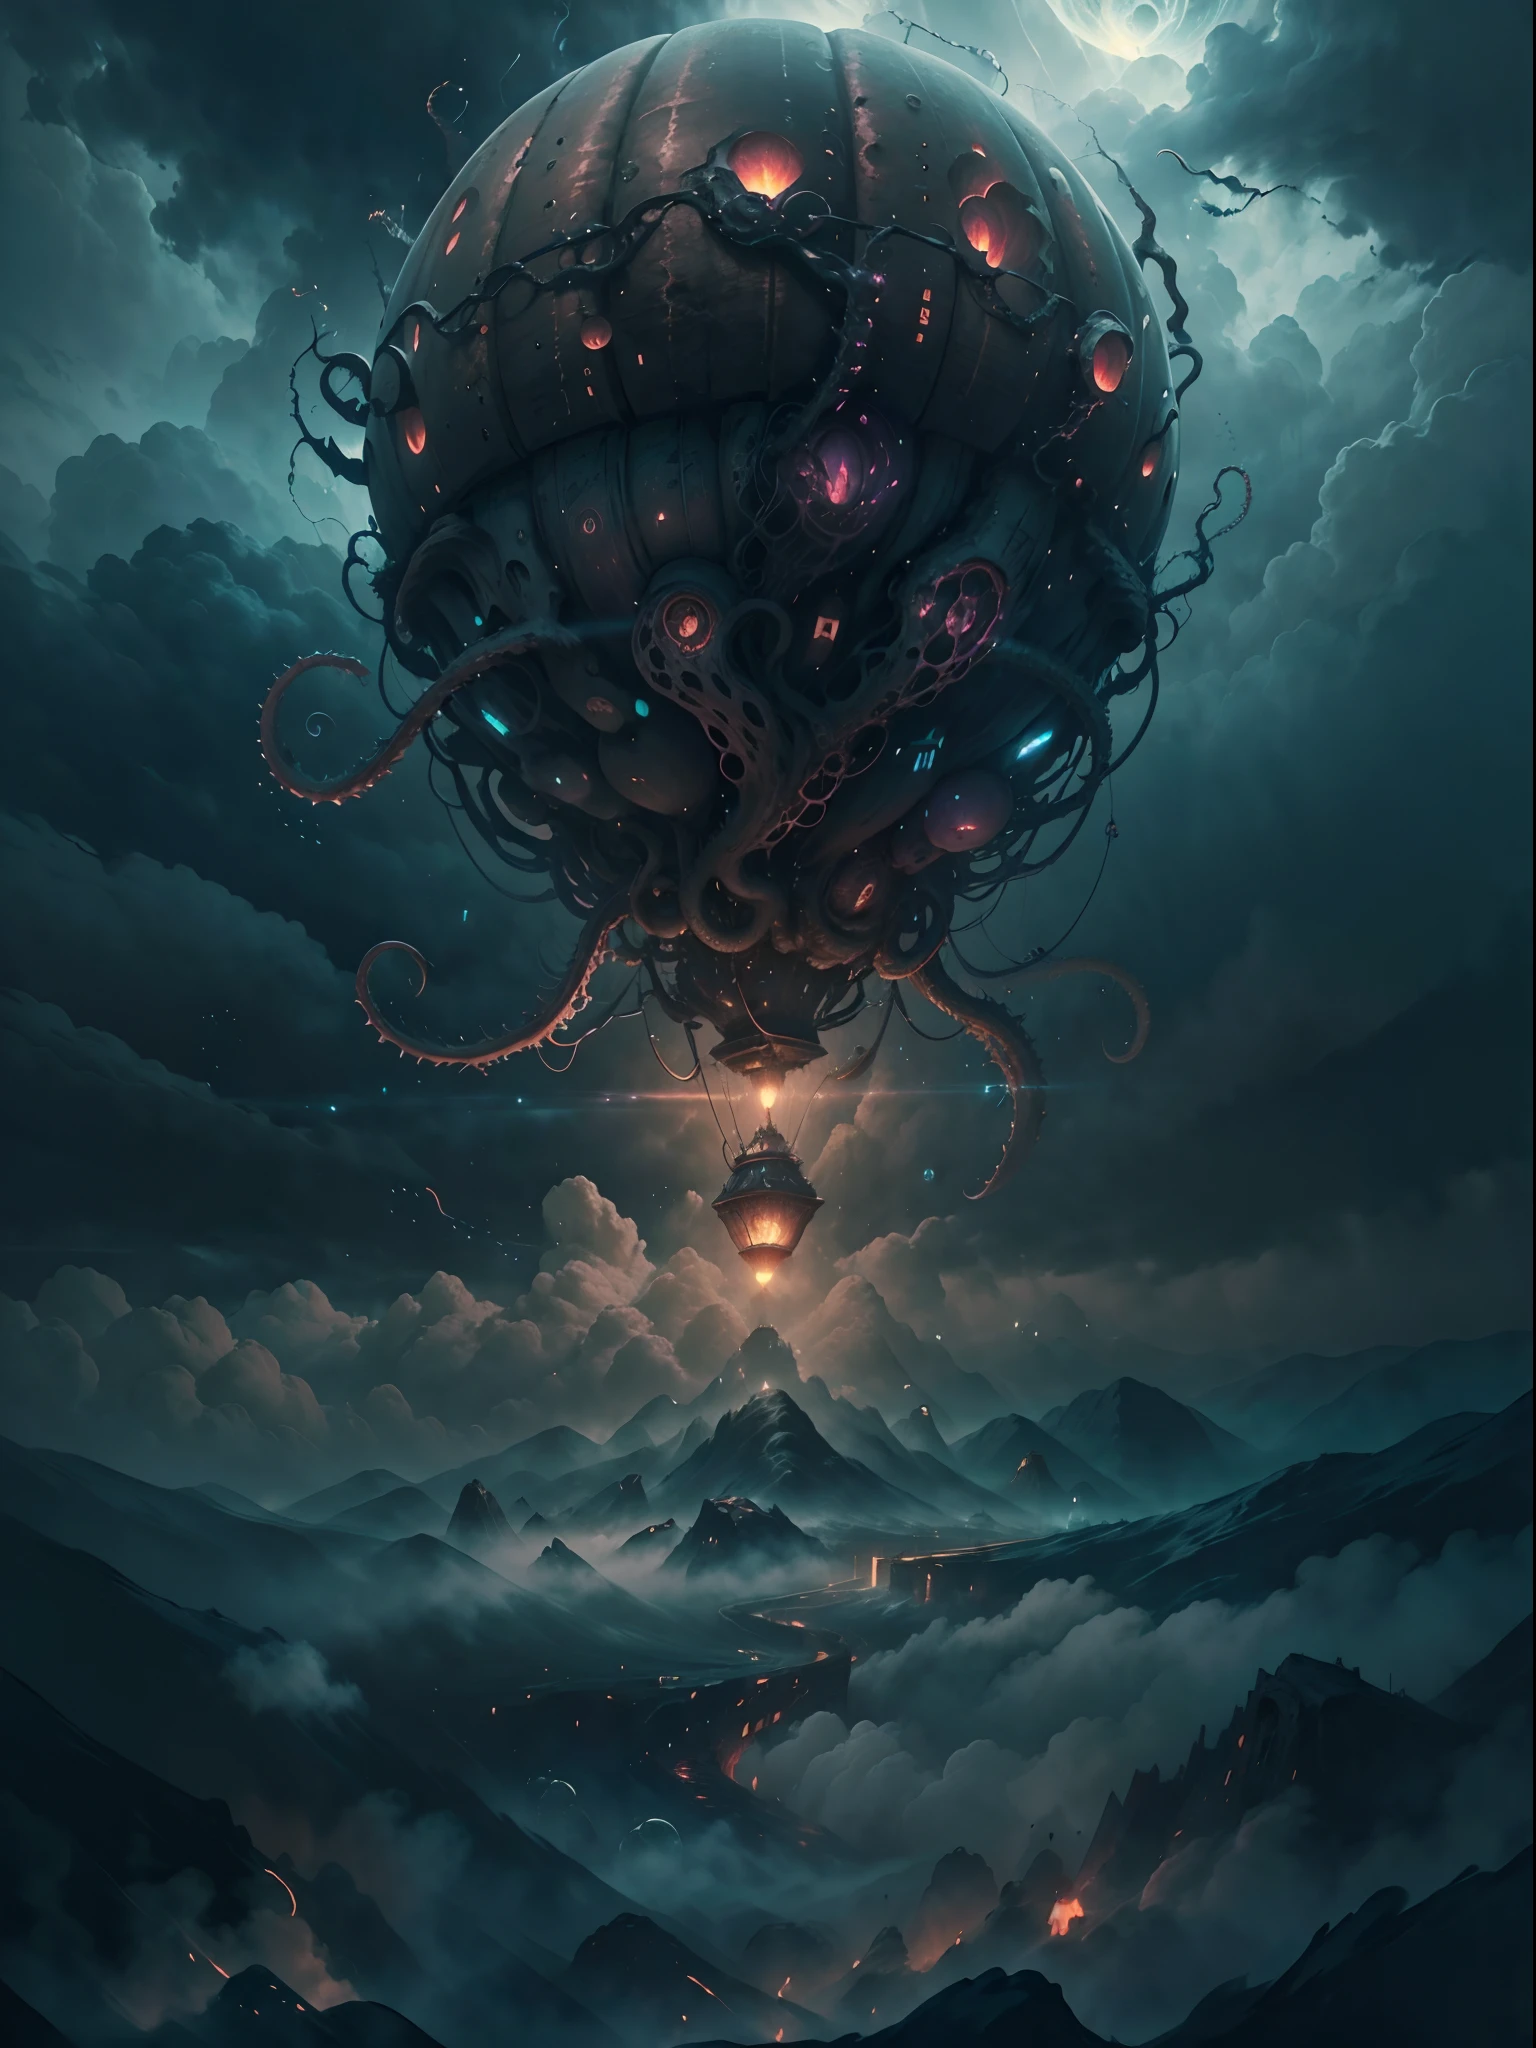 Nahaufnahme eines Heißluftballons, der über den Wolken fliegt, glühend vor überirdischer Energie,HP.Lovecraft-Stil, (beste Qualität,4k,8k,highres,Meisterwerk:1.2), ultra-detailliert, Realistisch:1.37, surreale, traumhafte Atmosphäre, unheimliche Beleuchtung, bedrohliche Schatten, Wirbelnder Nebel, gotische Ästhetik, alter kosmischer Horror, außerweltliche Wesen, Tentakeln, die aus den Wolken auftauchen, unheimliche Symbole, mysteriöse Artefakte, geheimnisvolles Licht erhellt die Szene, dunkle und düstere Farben, starke Kontraste, unvergesslich schöne Landschaft, immense scale, Vorahnung von Unbehagen.